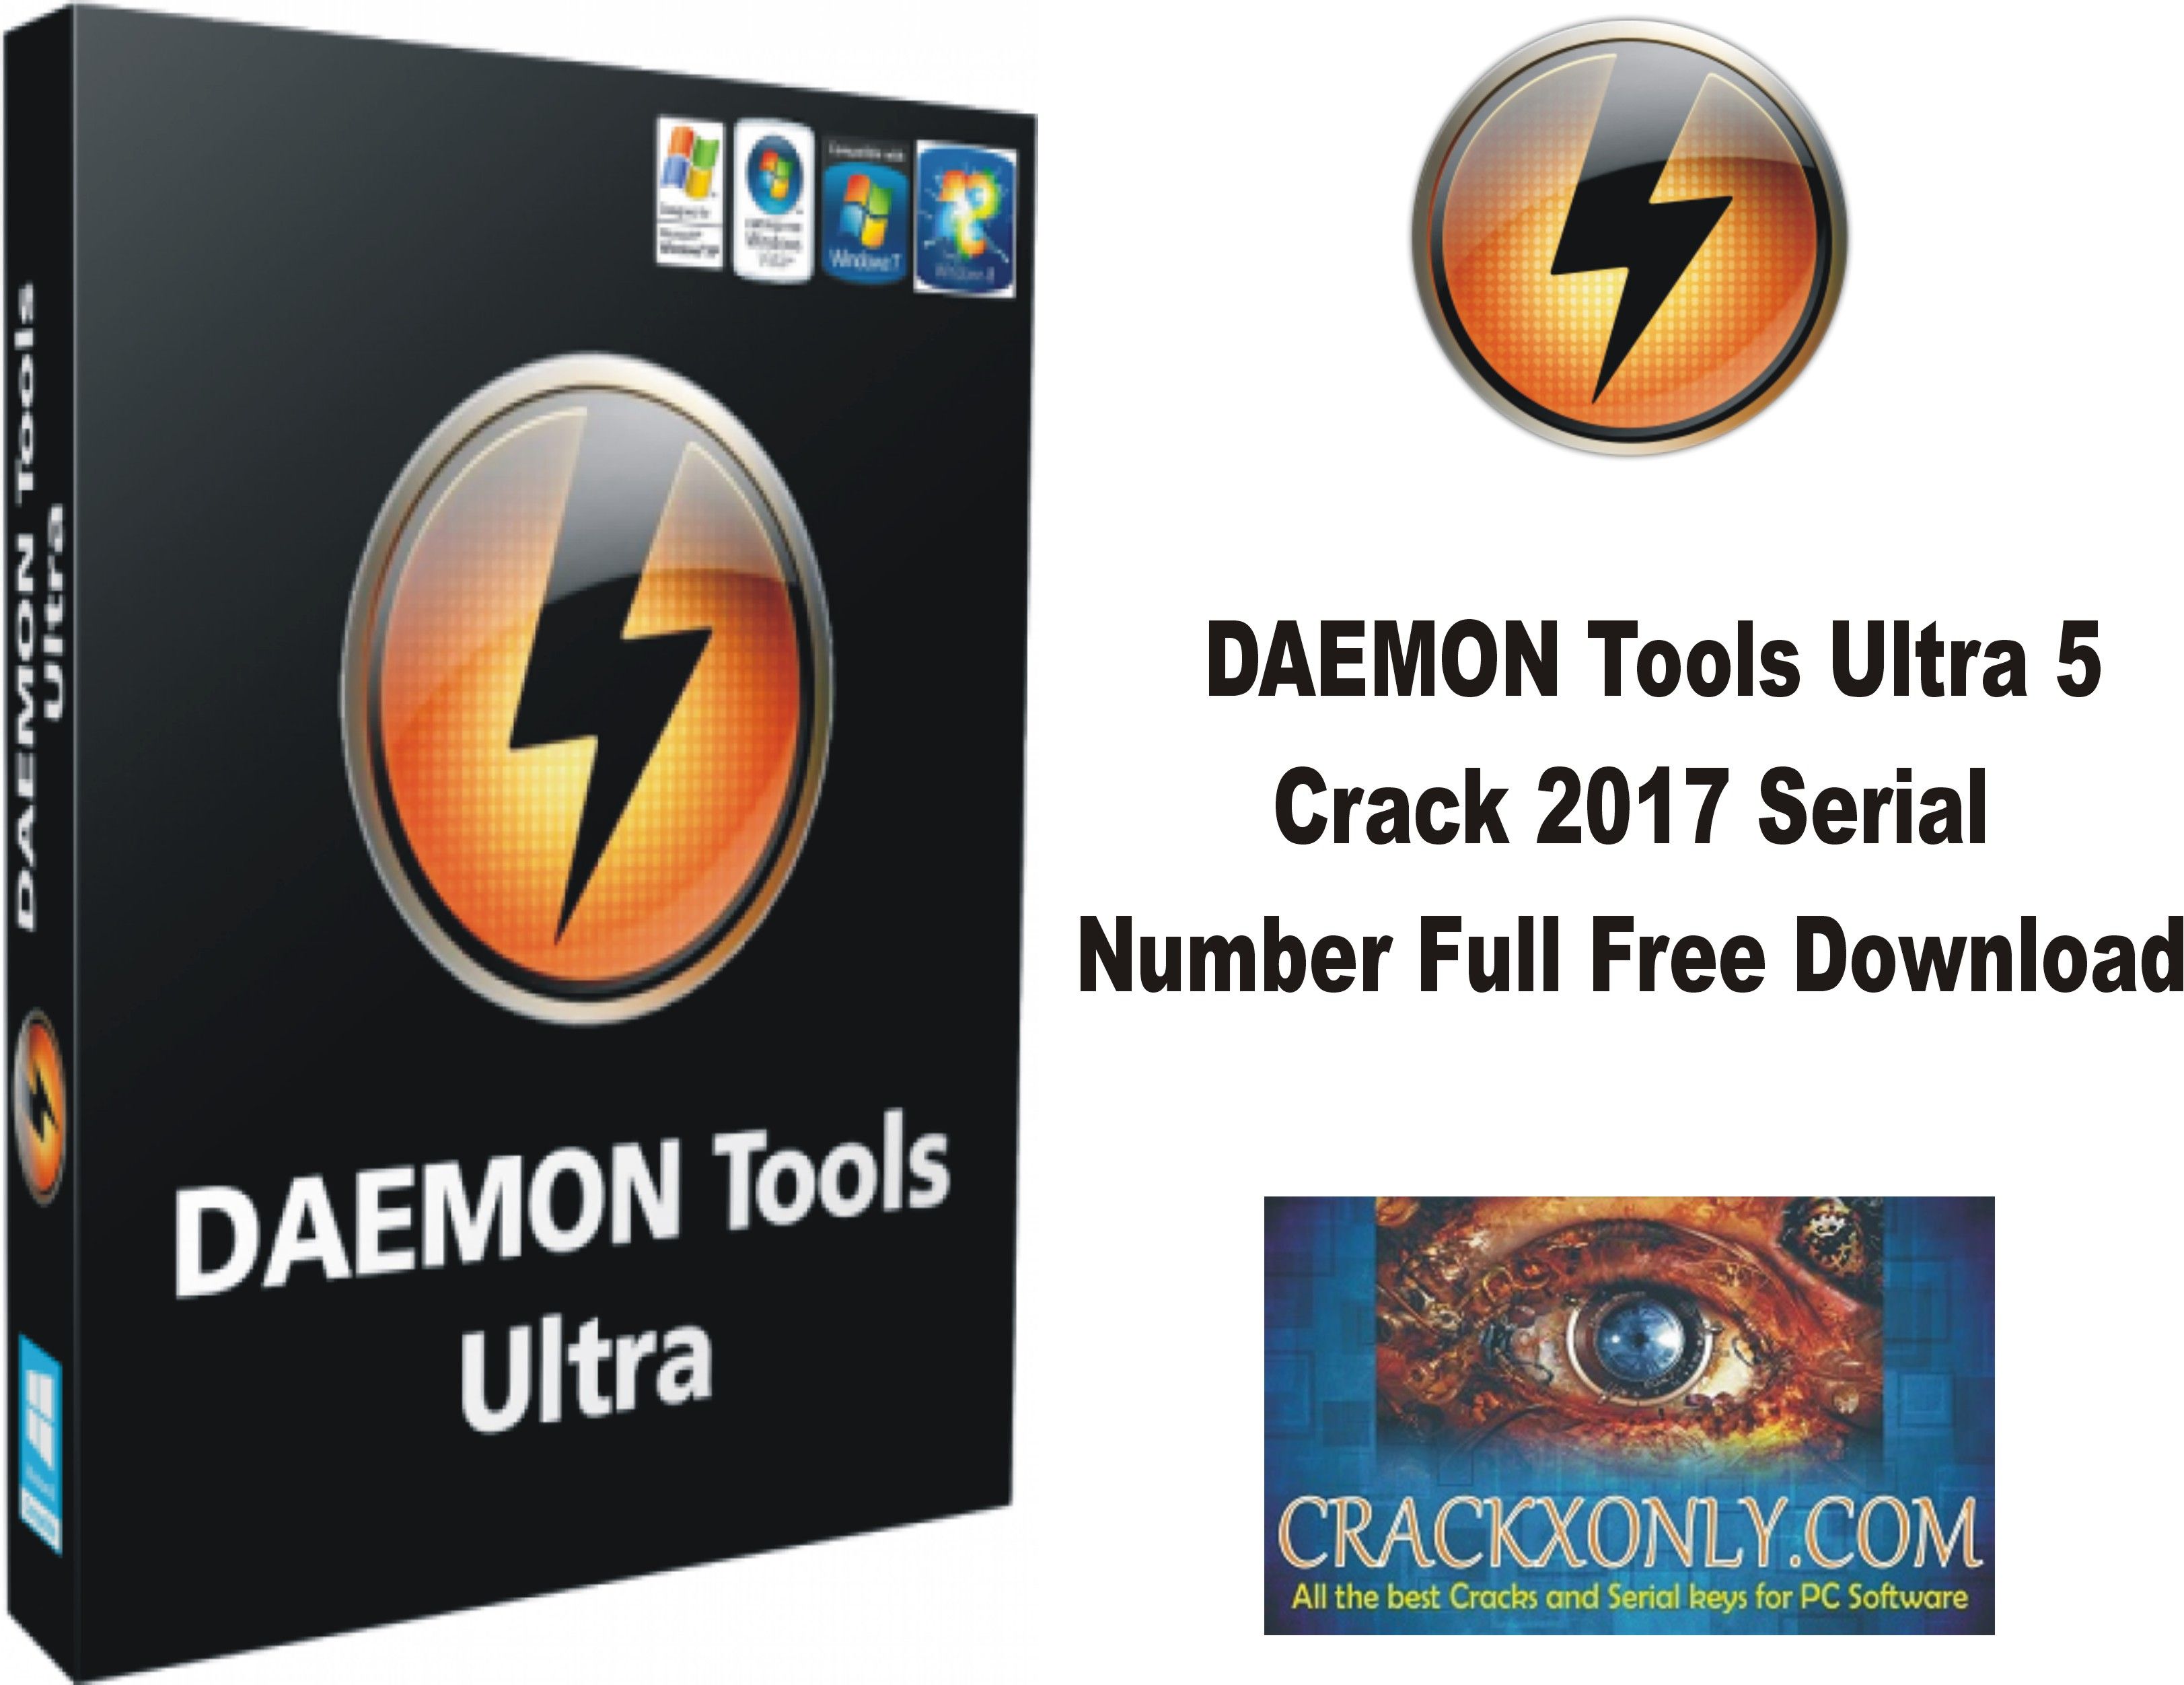 Download daemon tool gratis full crack 4k video download 3.4.3 full with crack